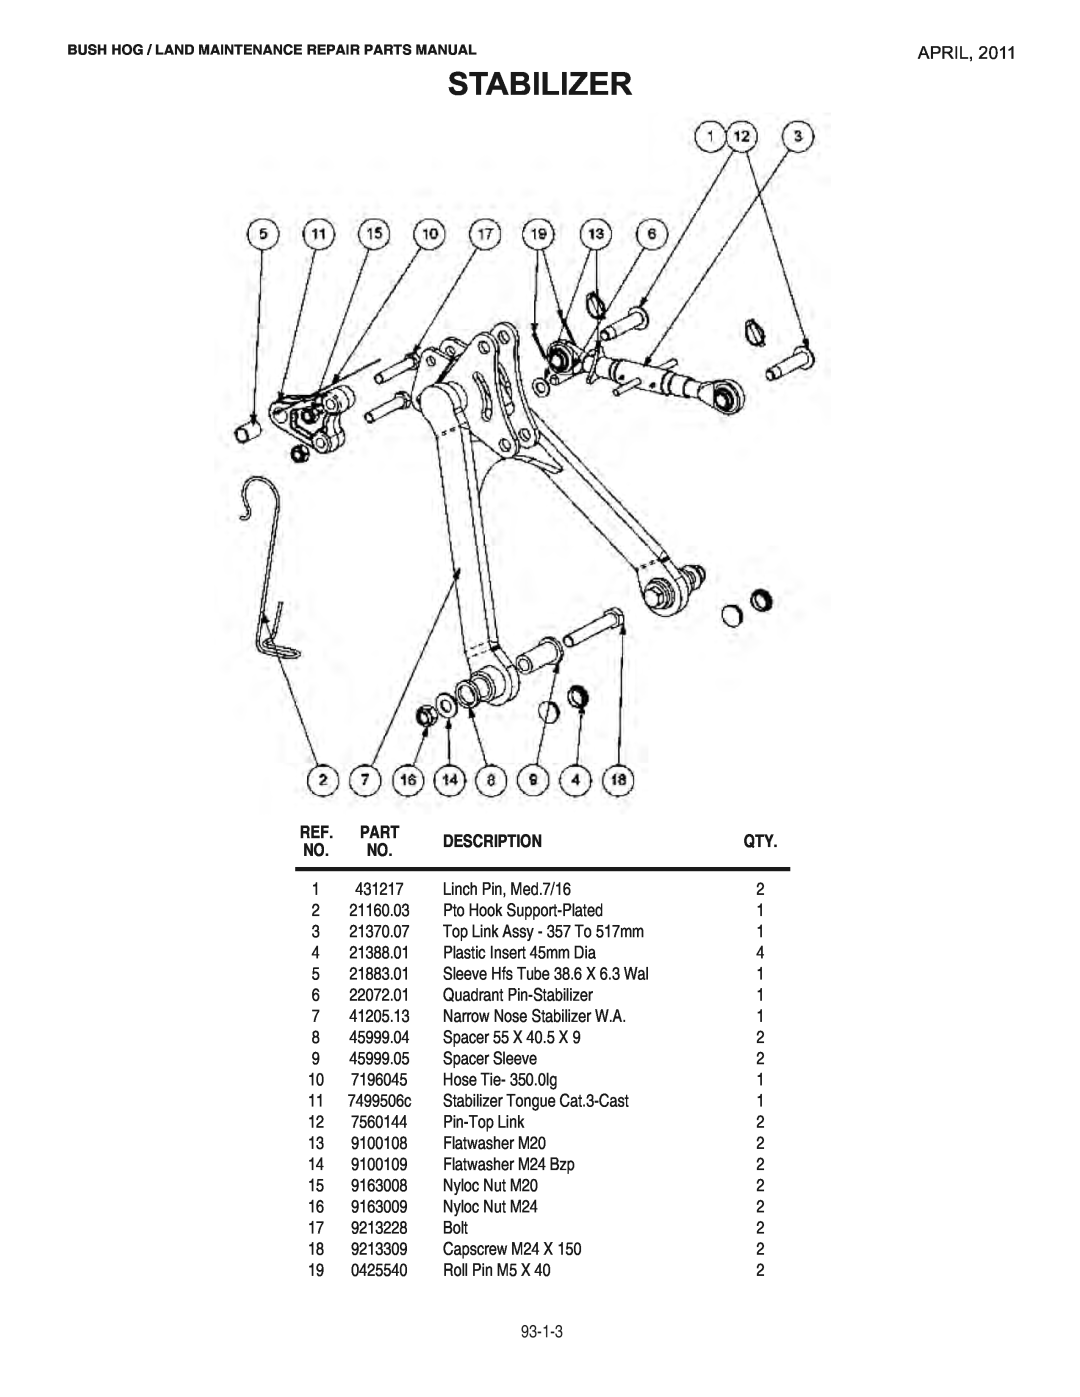 Bush Hog RMB1865E manual Stabilizer, April, Description 